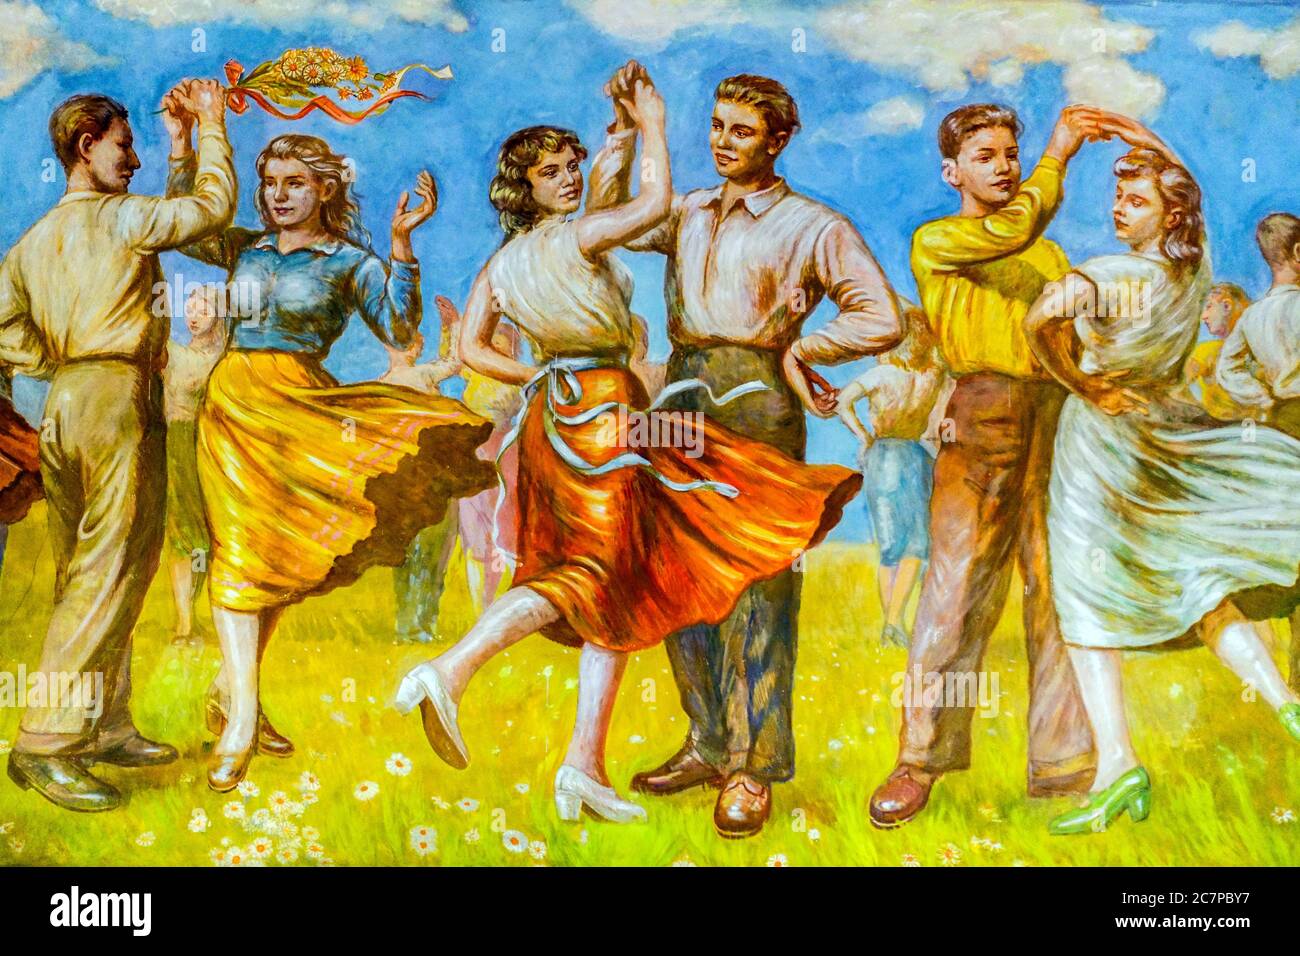 Danse populaire, peinture murale du style de réalisme socialiste du début des années 50, art communiste à la Maison de la Culture, Ostrov nad OHRI République tchèque Banque D'Images